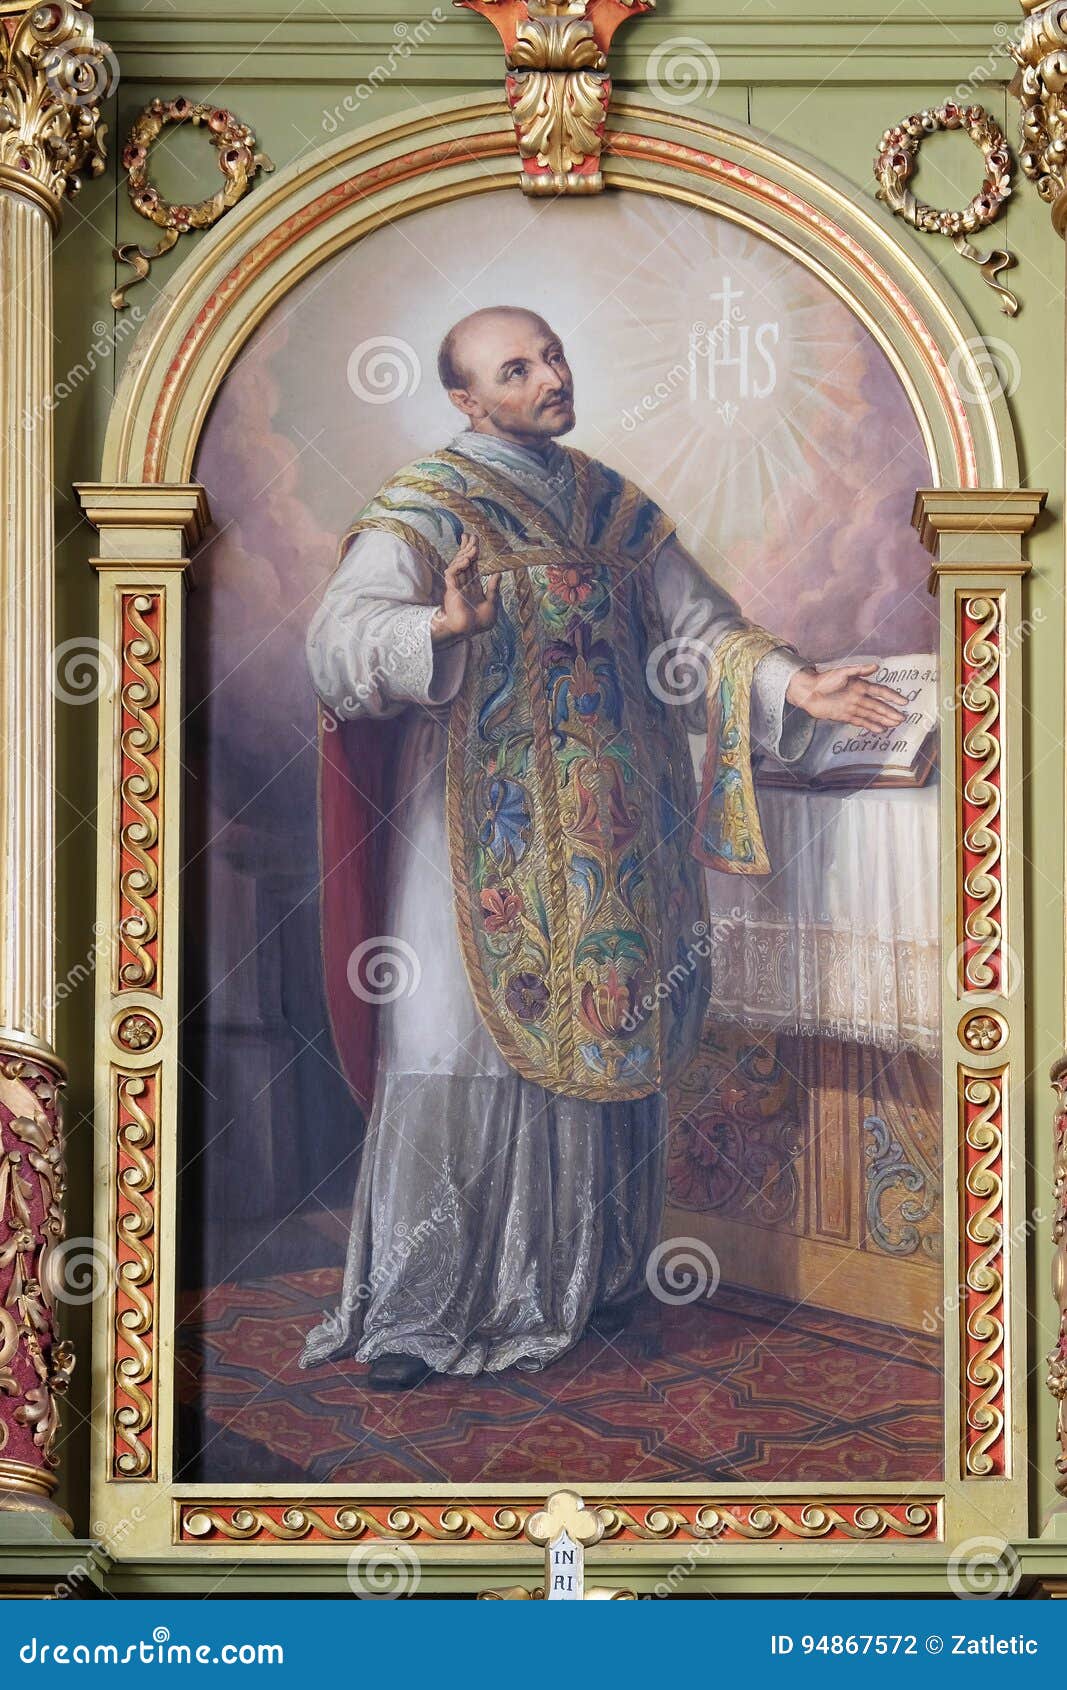 saint ignatius of loyola